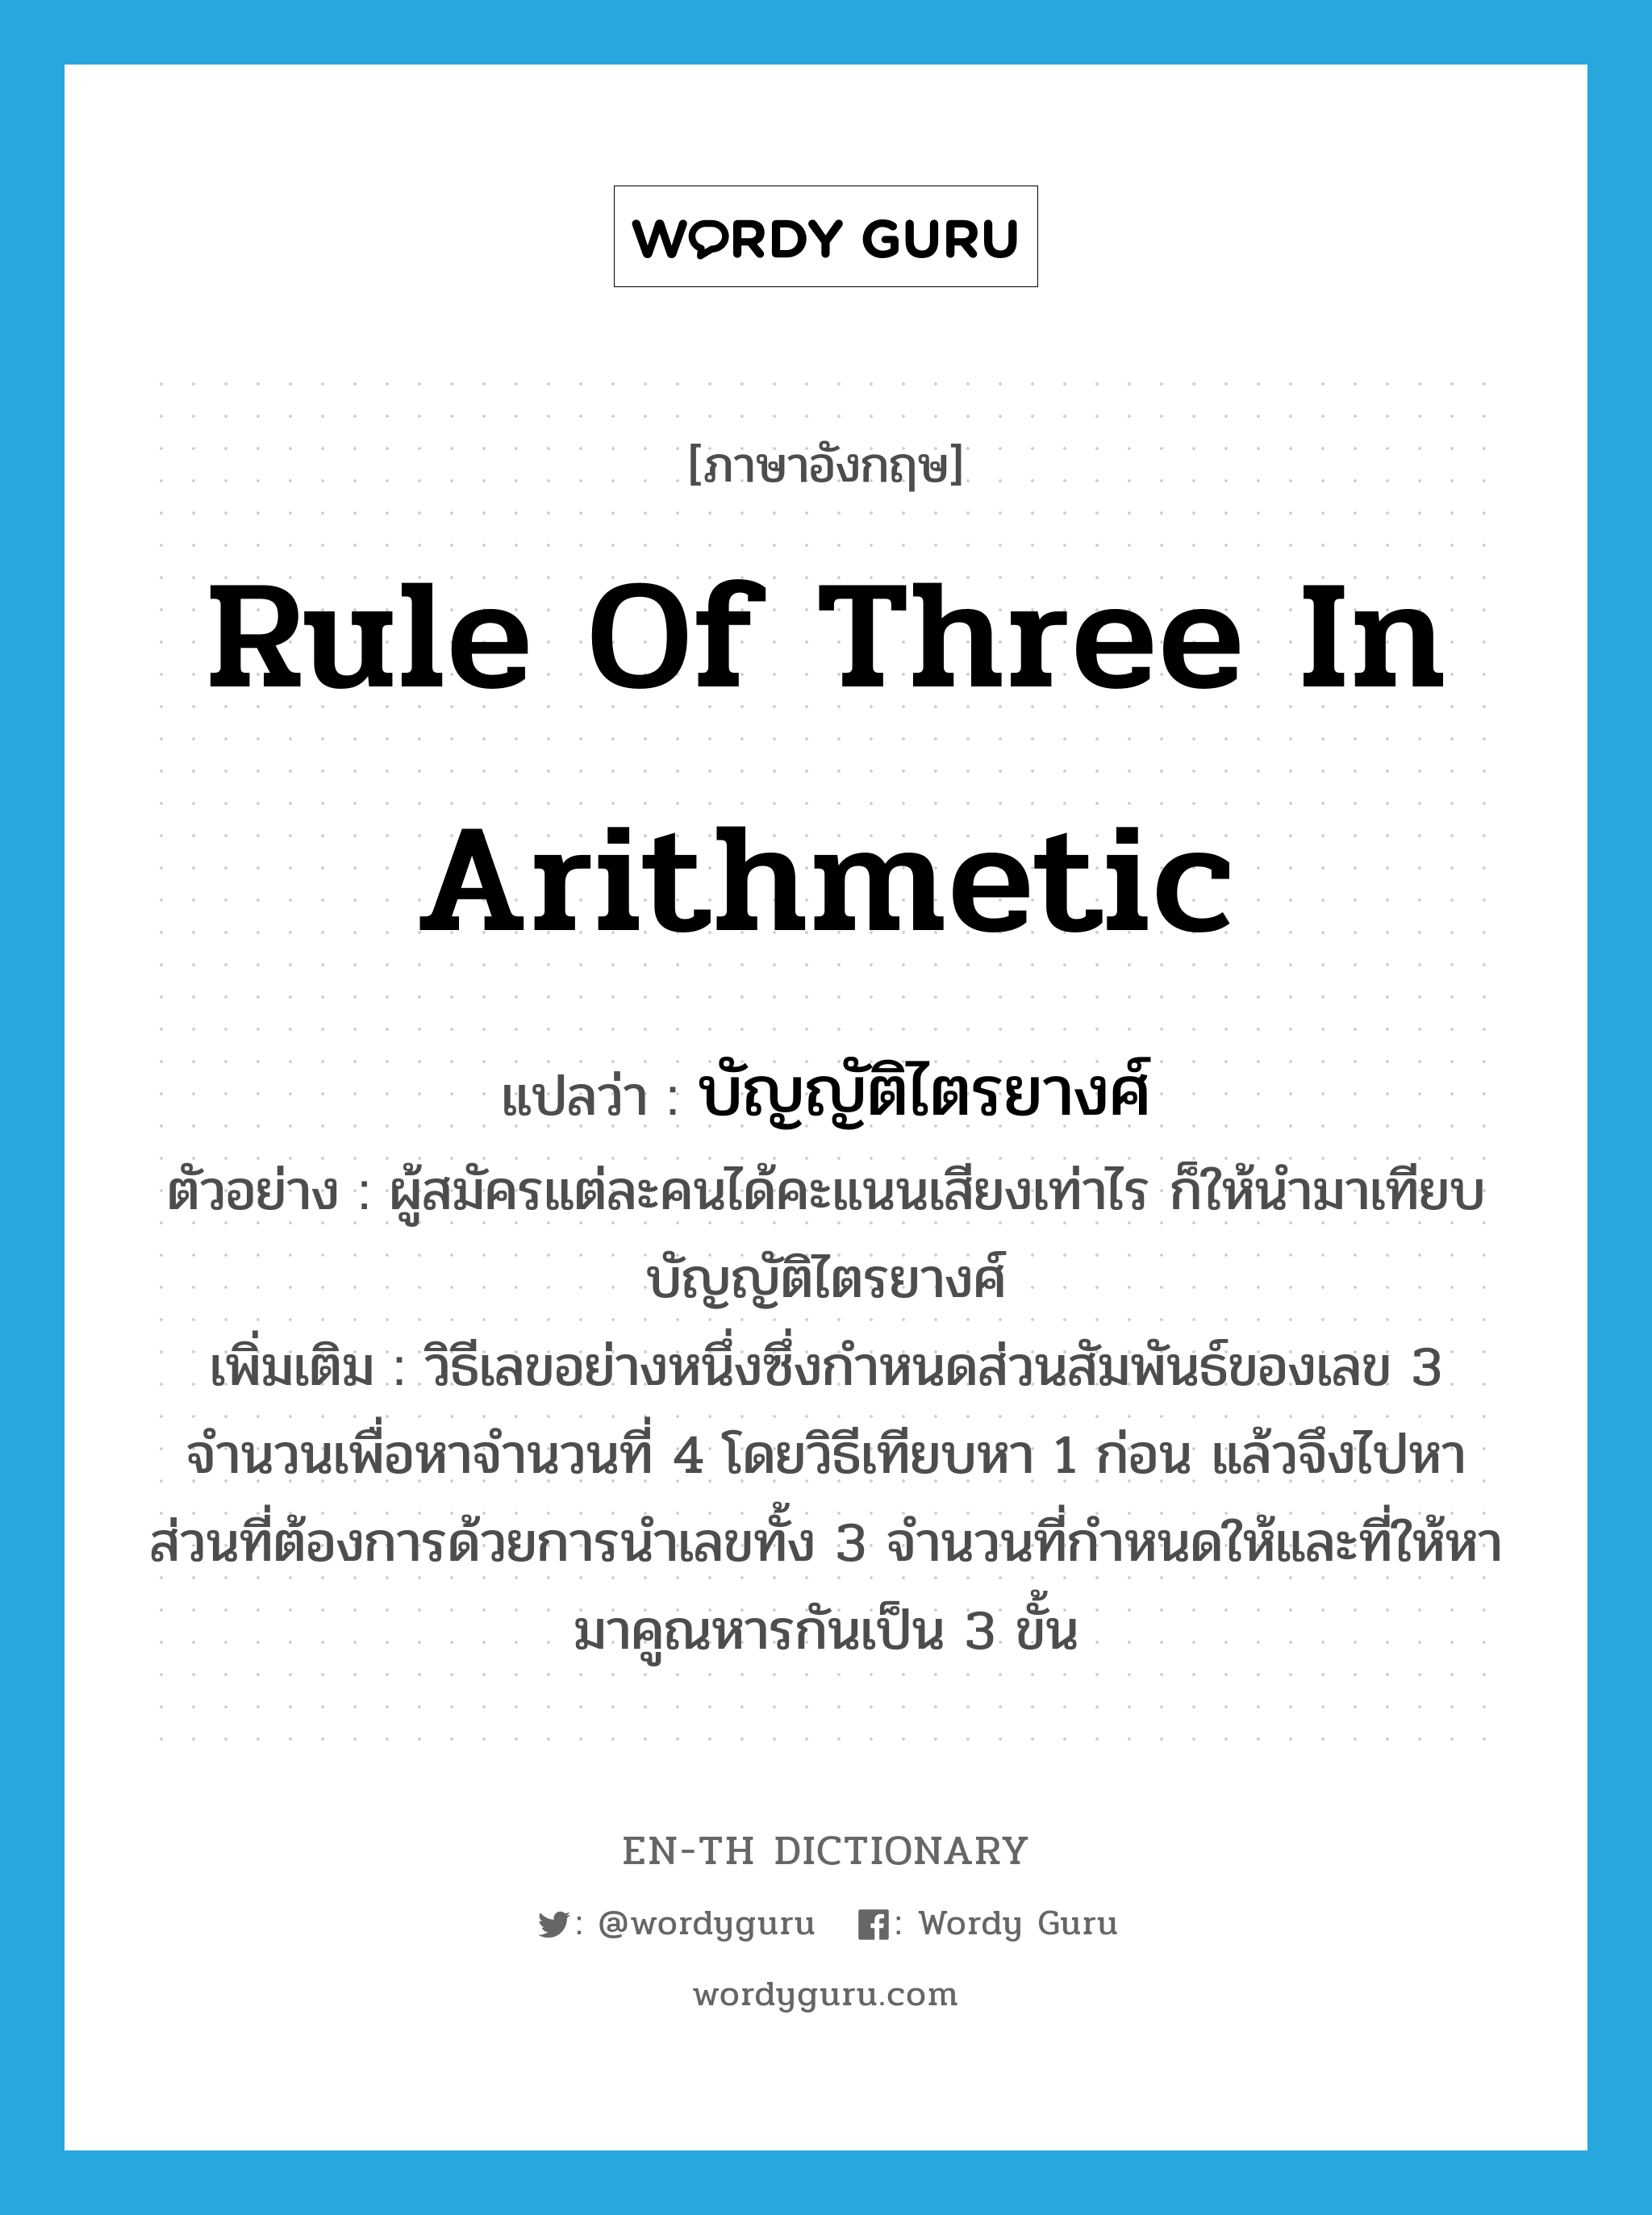 rule of three in arithmetic แปลว่า?, คำศัพท์ภาษาอังกฤษ rule of three in arithmetic แปลว่า บัญญัติไตรยางศ์ ประเภท N ตัวอย่าง ผู้สมัครแต่ละคนได้คะแนนเสียงเท่าไร ก็ให้นำมาเทียบบัญญัติไตรยางศ์ เพิ่มเติม วิธีเลขอย่างหนึ่งซึ่งกำหนดส่วนสัมพันธ์ของเลข 3 จำนวนเพื่อหาจำนวนที่ 4 โดยวิธีเทียบหา 1 ก่อน แล้วจึงไปหาส่วนที่ต้องการด้วยการนำเลขทั้ง 3 จำนวนที่กำหนดให้และที่ให้หามาคูณหารกันเป็น 3 ขั้น หมวด N